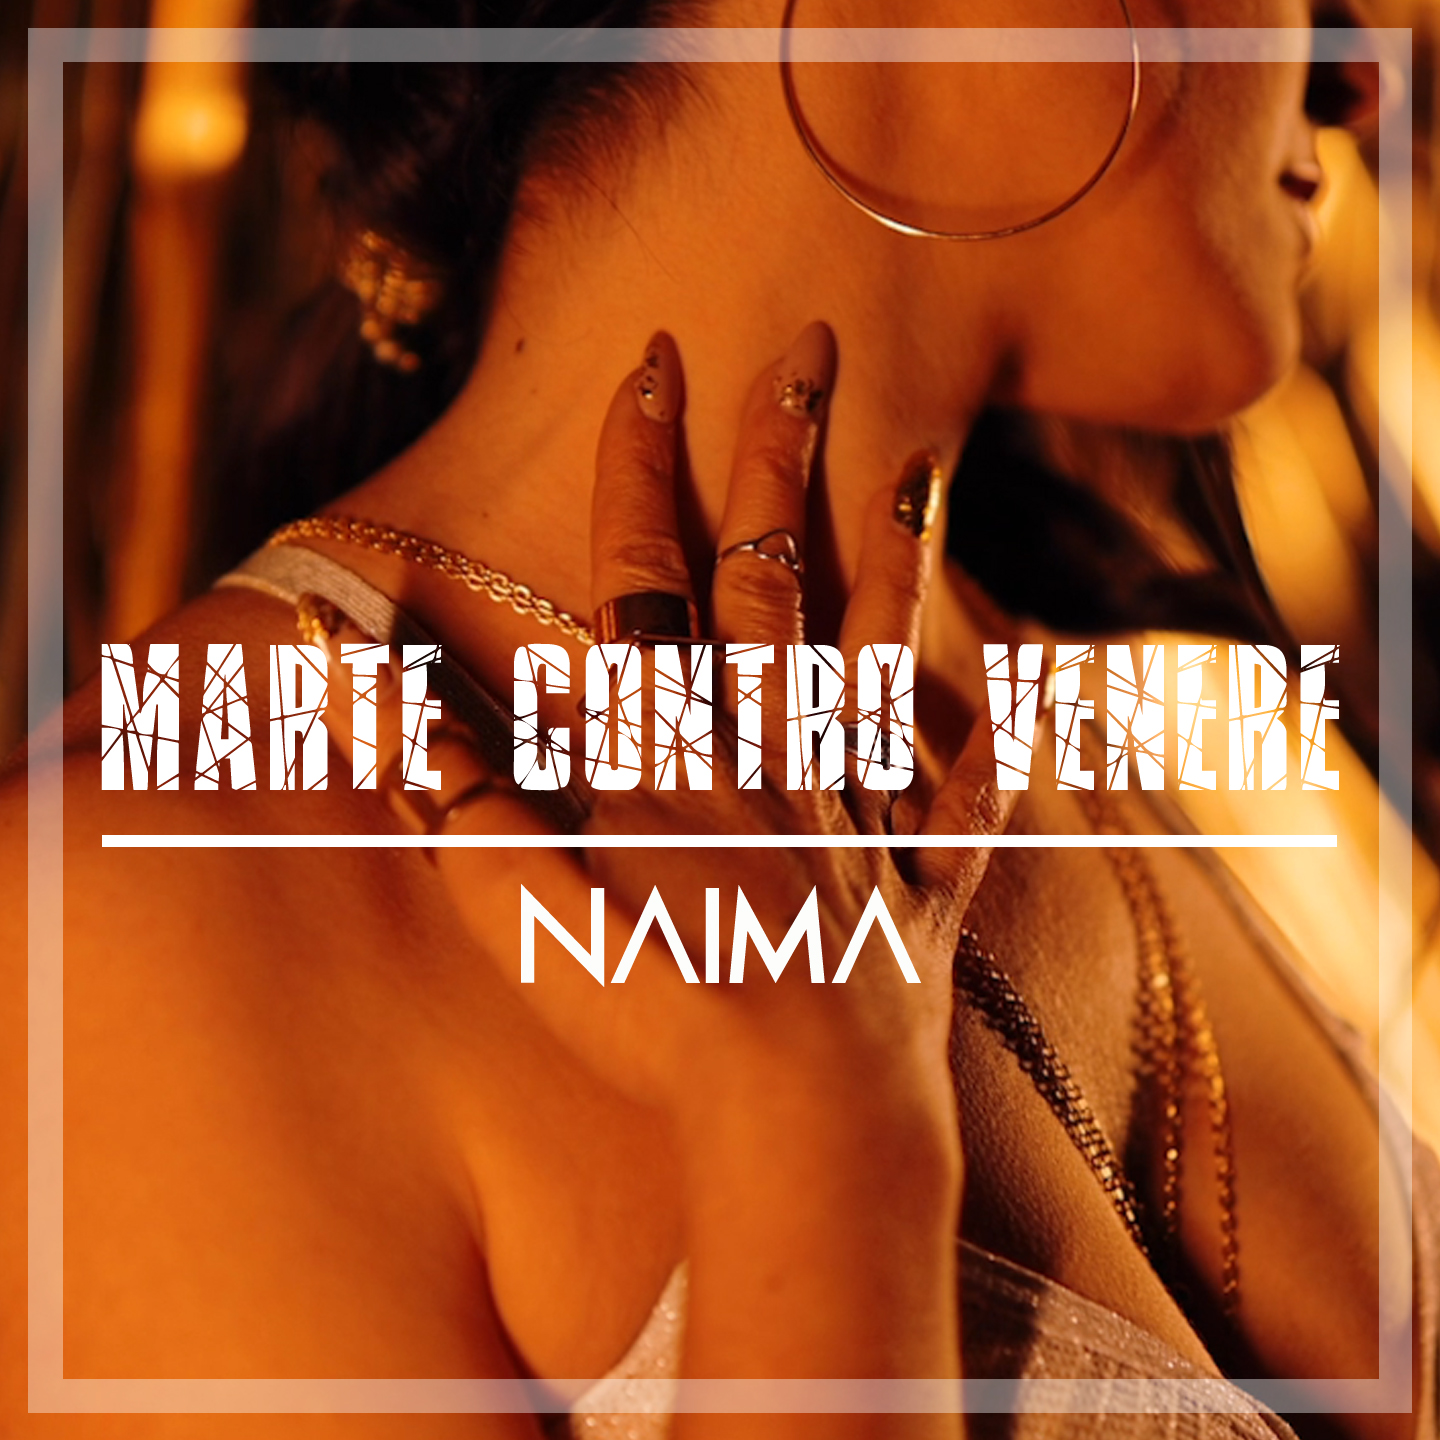 You are currently viewing Naima in radio e negli store digitali il nuovo singolo “Marte contro Venere”